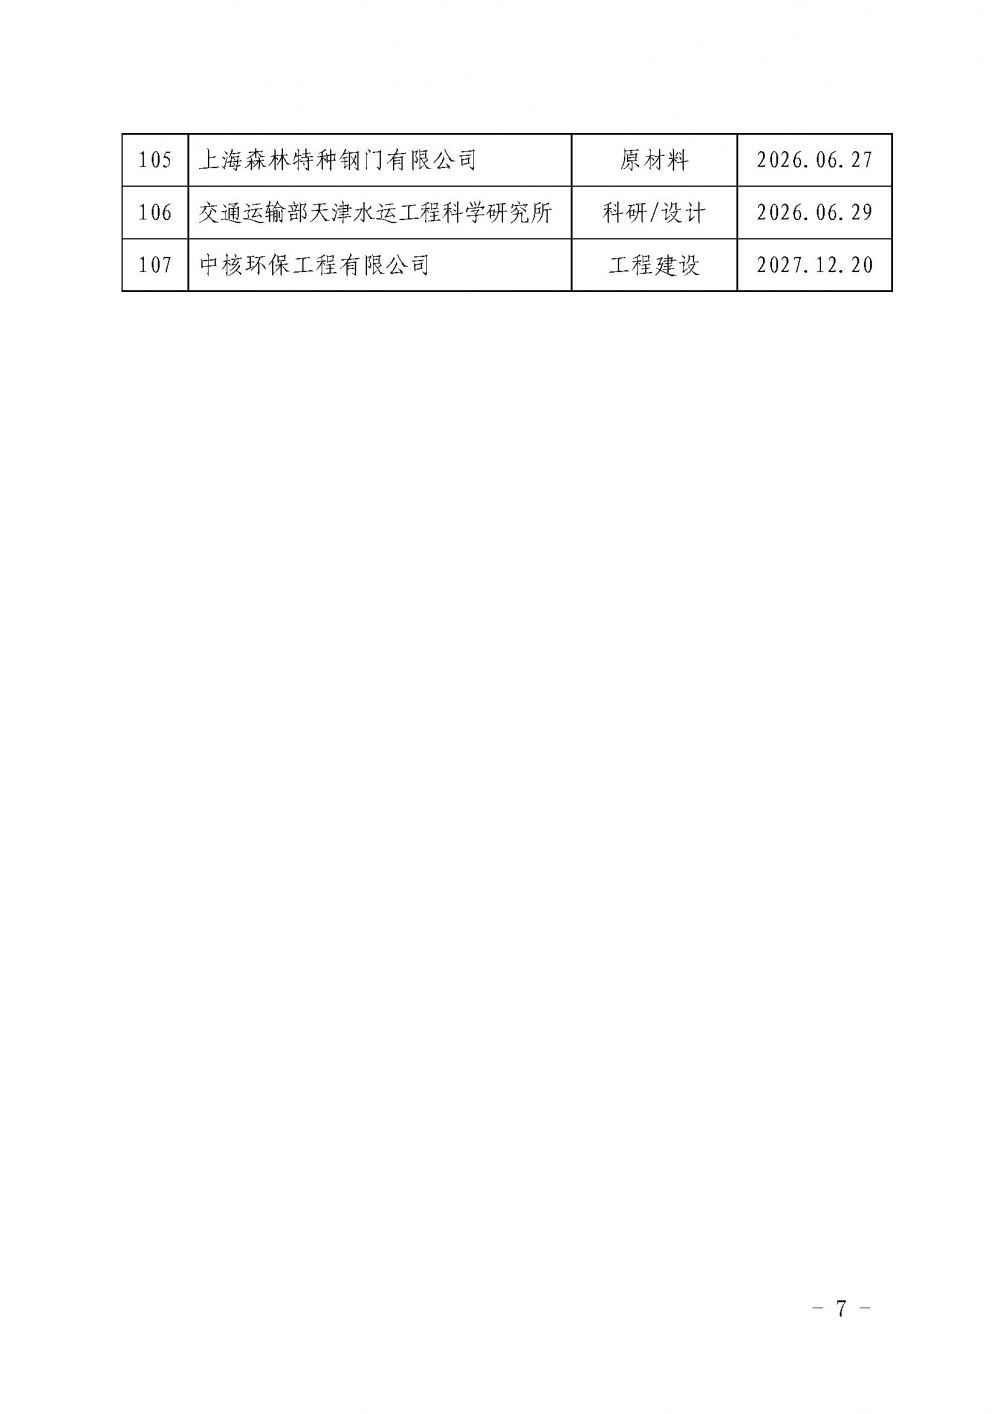 中国核能行业协会关于发布第十九批核能行业合格供应商名录的公告_页面_7.jpg